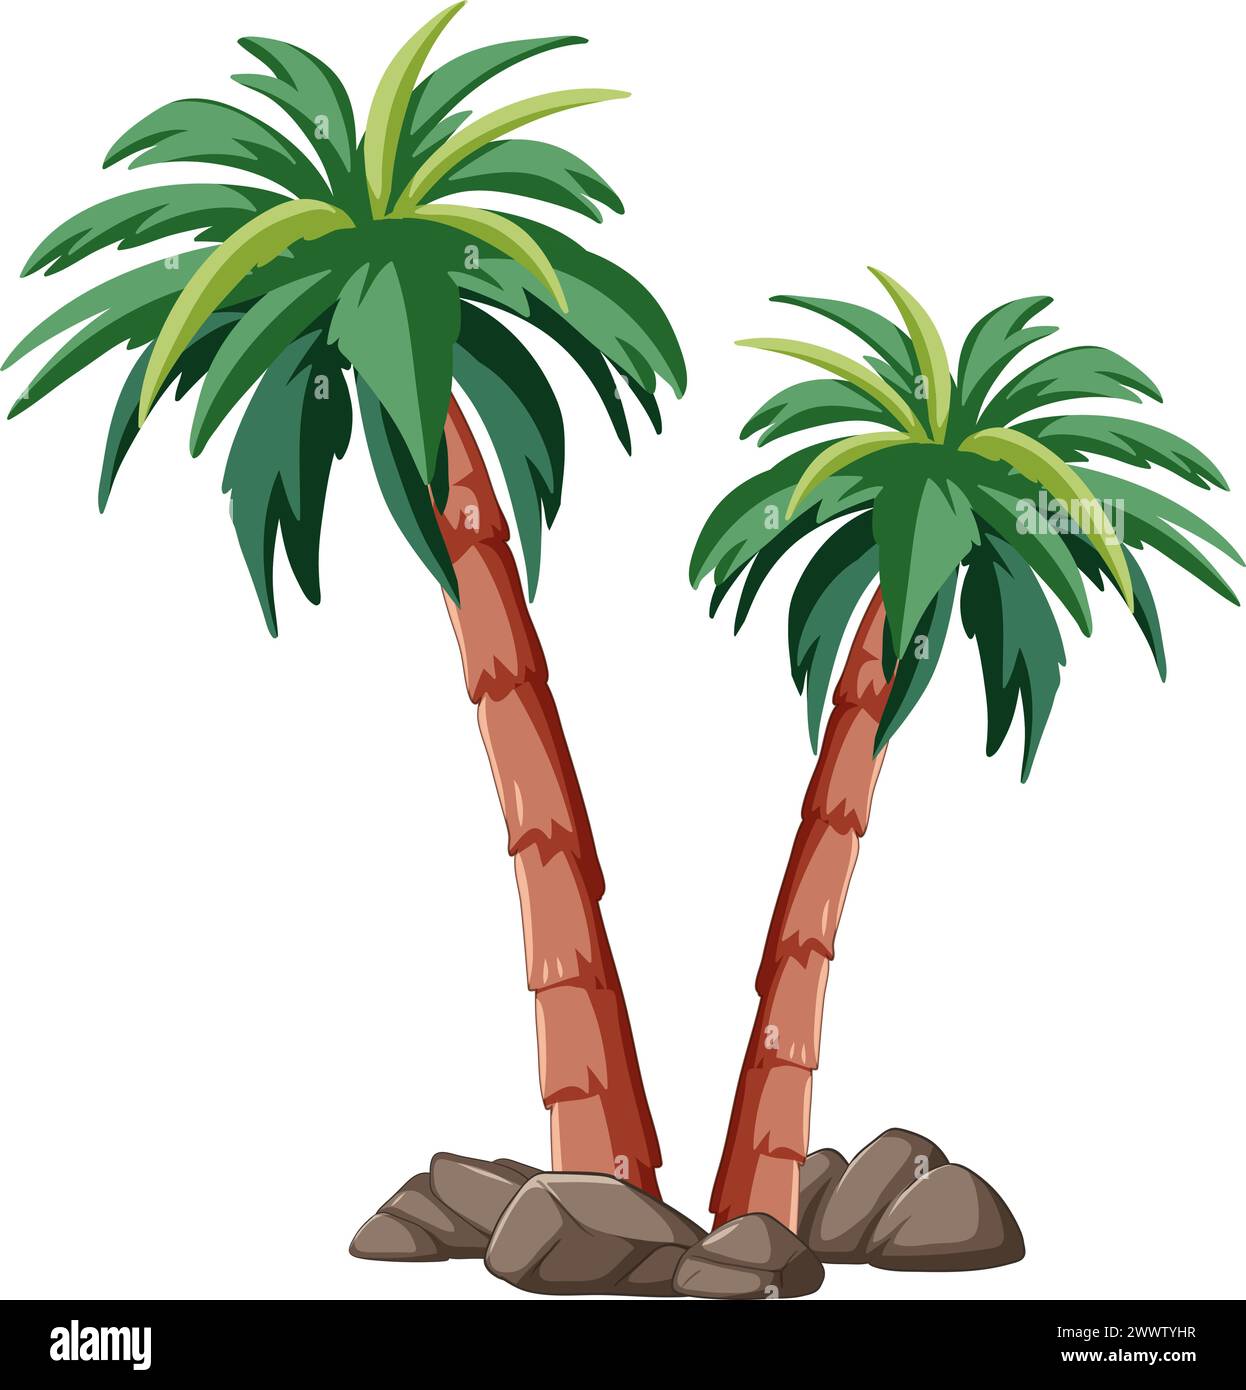 Zwei Palmen mit grünen Blättern und braunen Stämmen. Stock Vektor